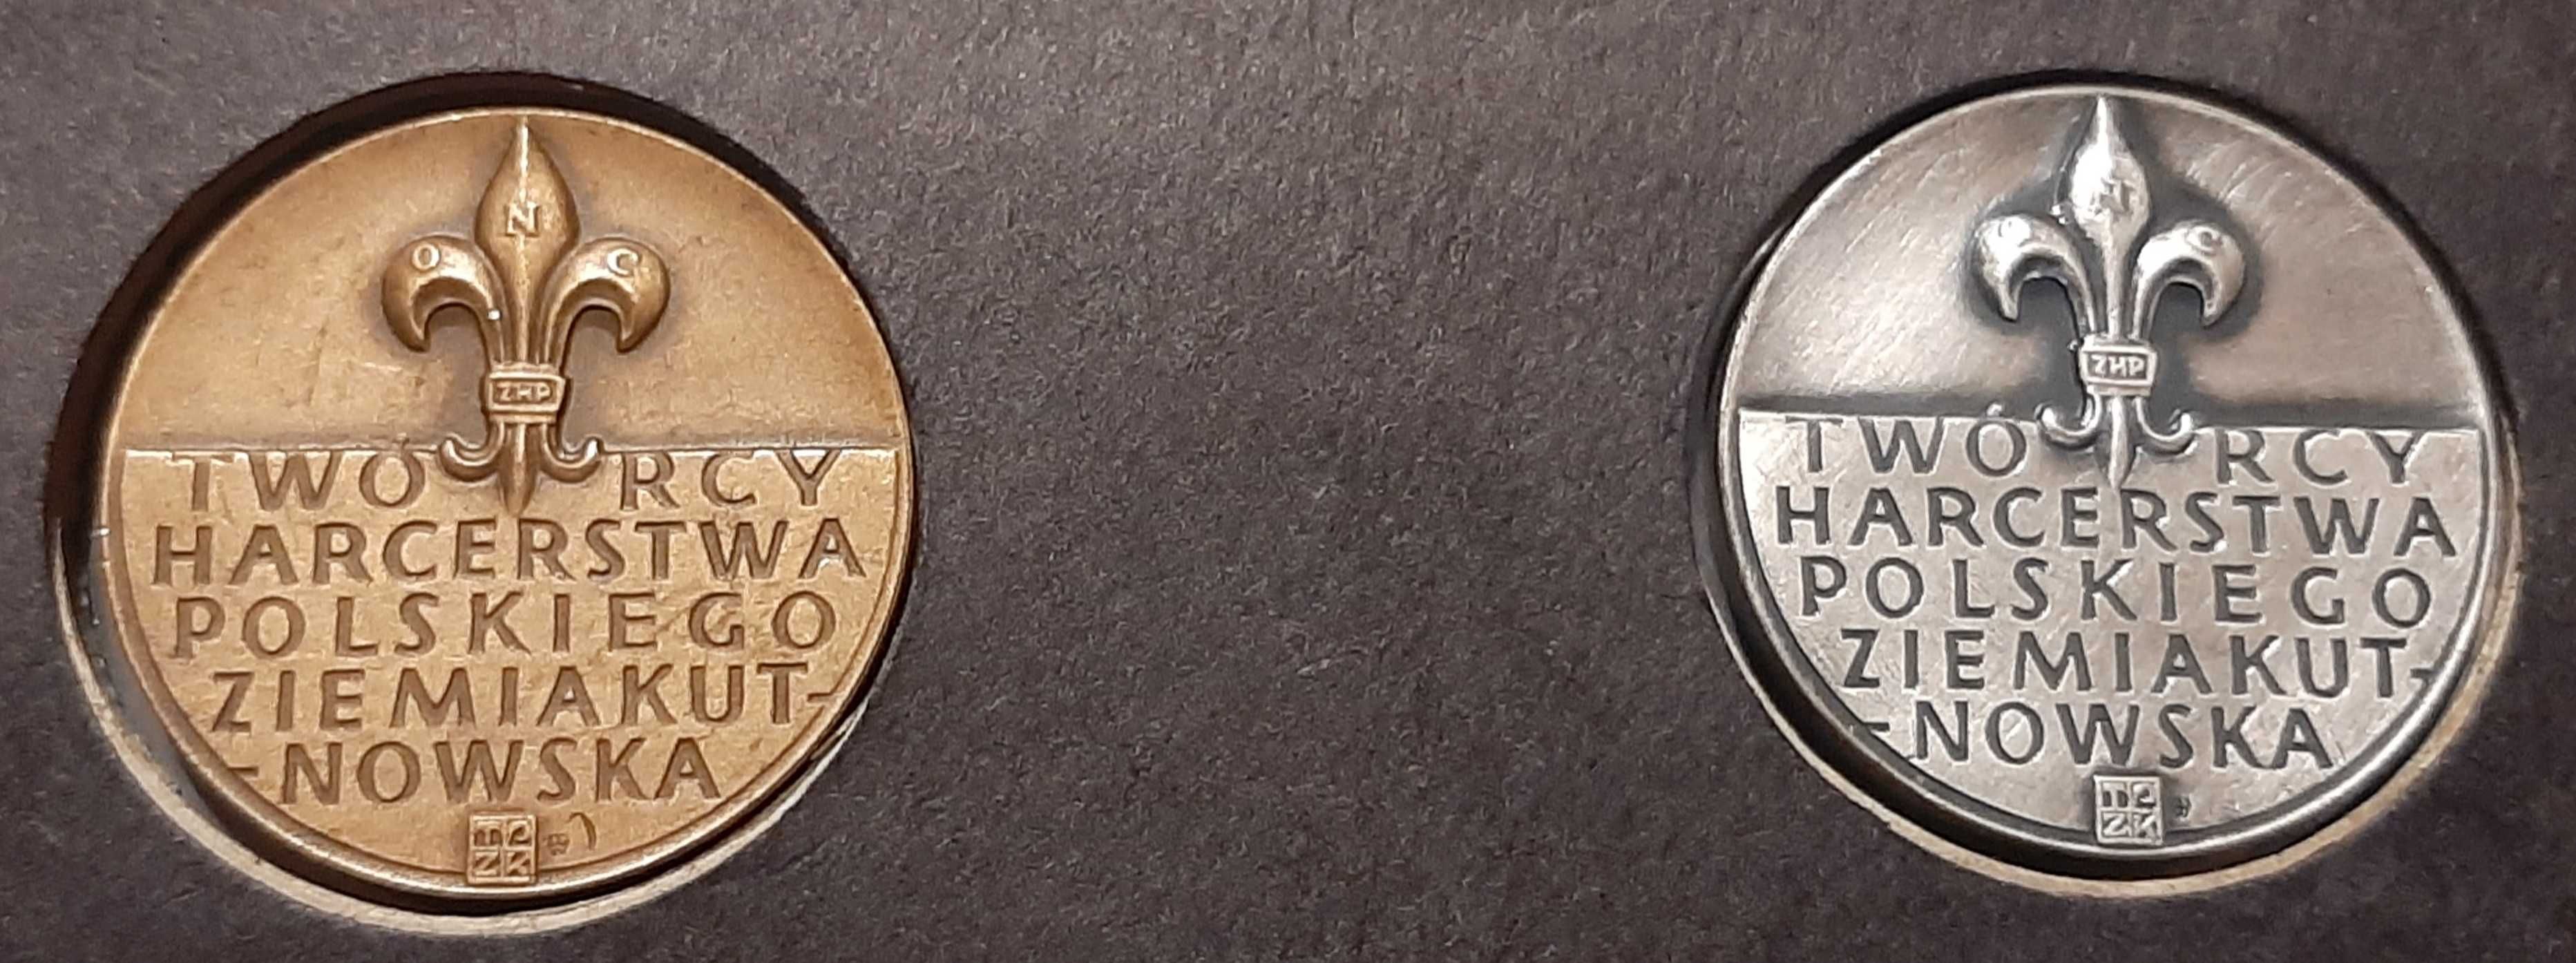 Medale Druh Andrzej Małkowski/Harcerstwo/Kutno/brąz/srebrzony/4 cm